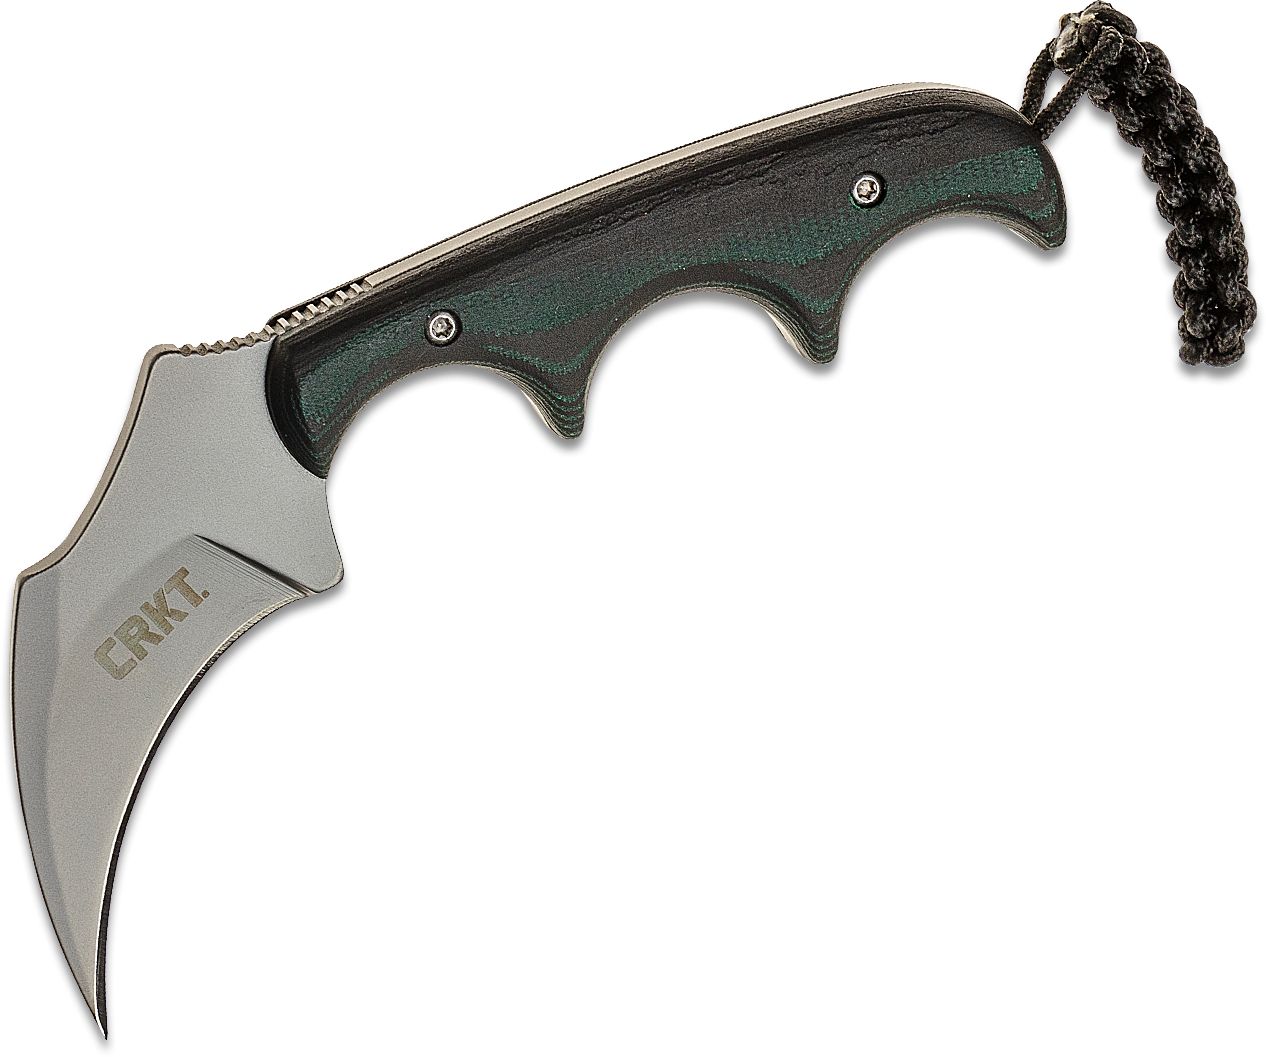 Columbia River CRKT 2389 Folts Keramin Neck Knife 2.31 Blade, Polished  Resin Infused Fiber Handles - KnifeCenter